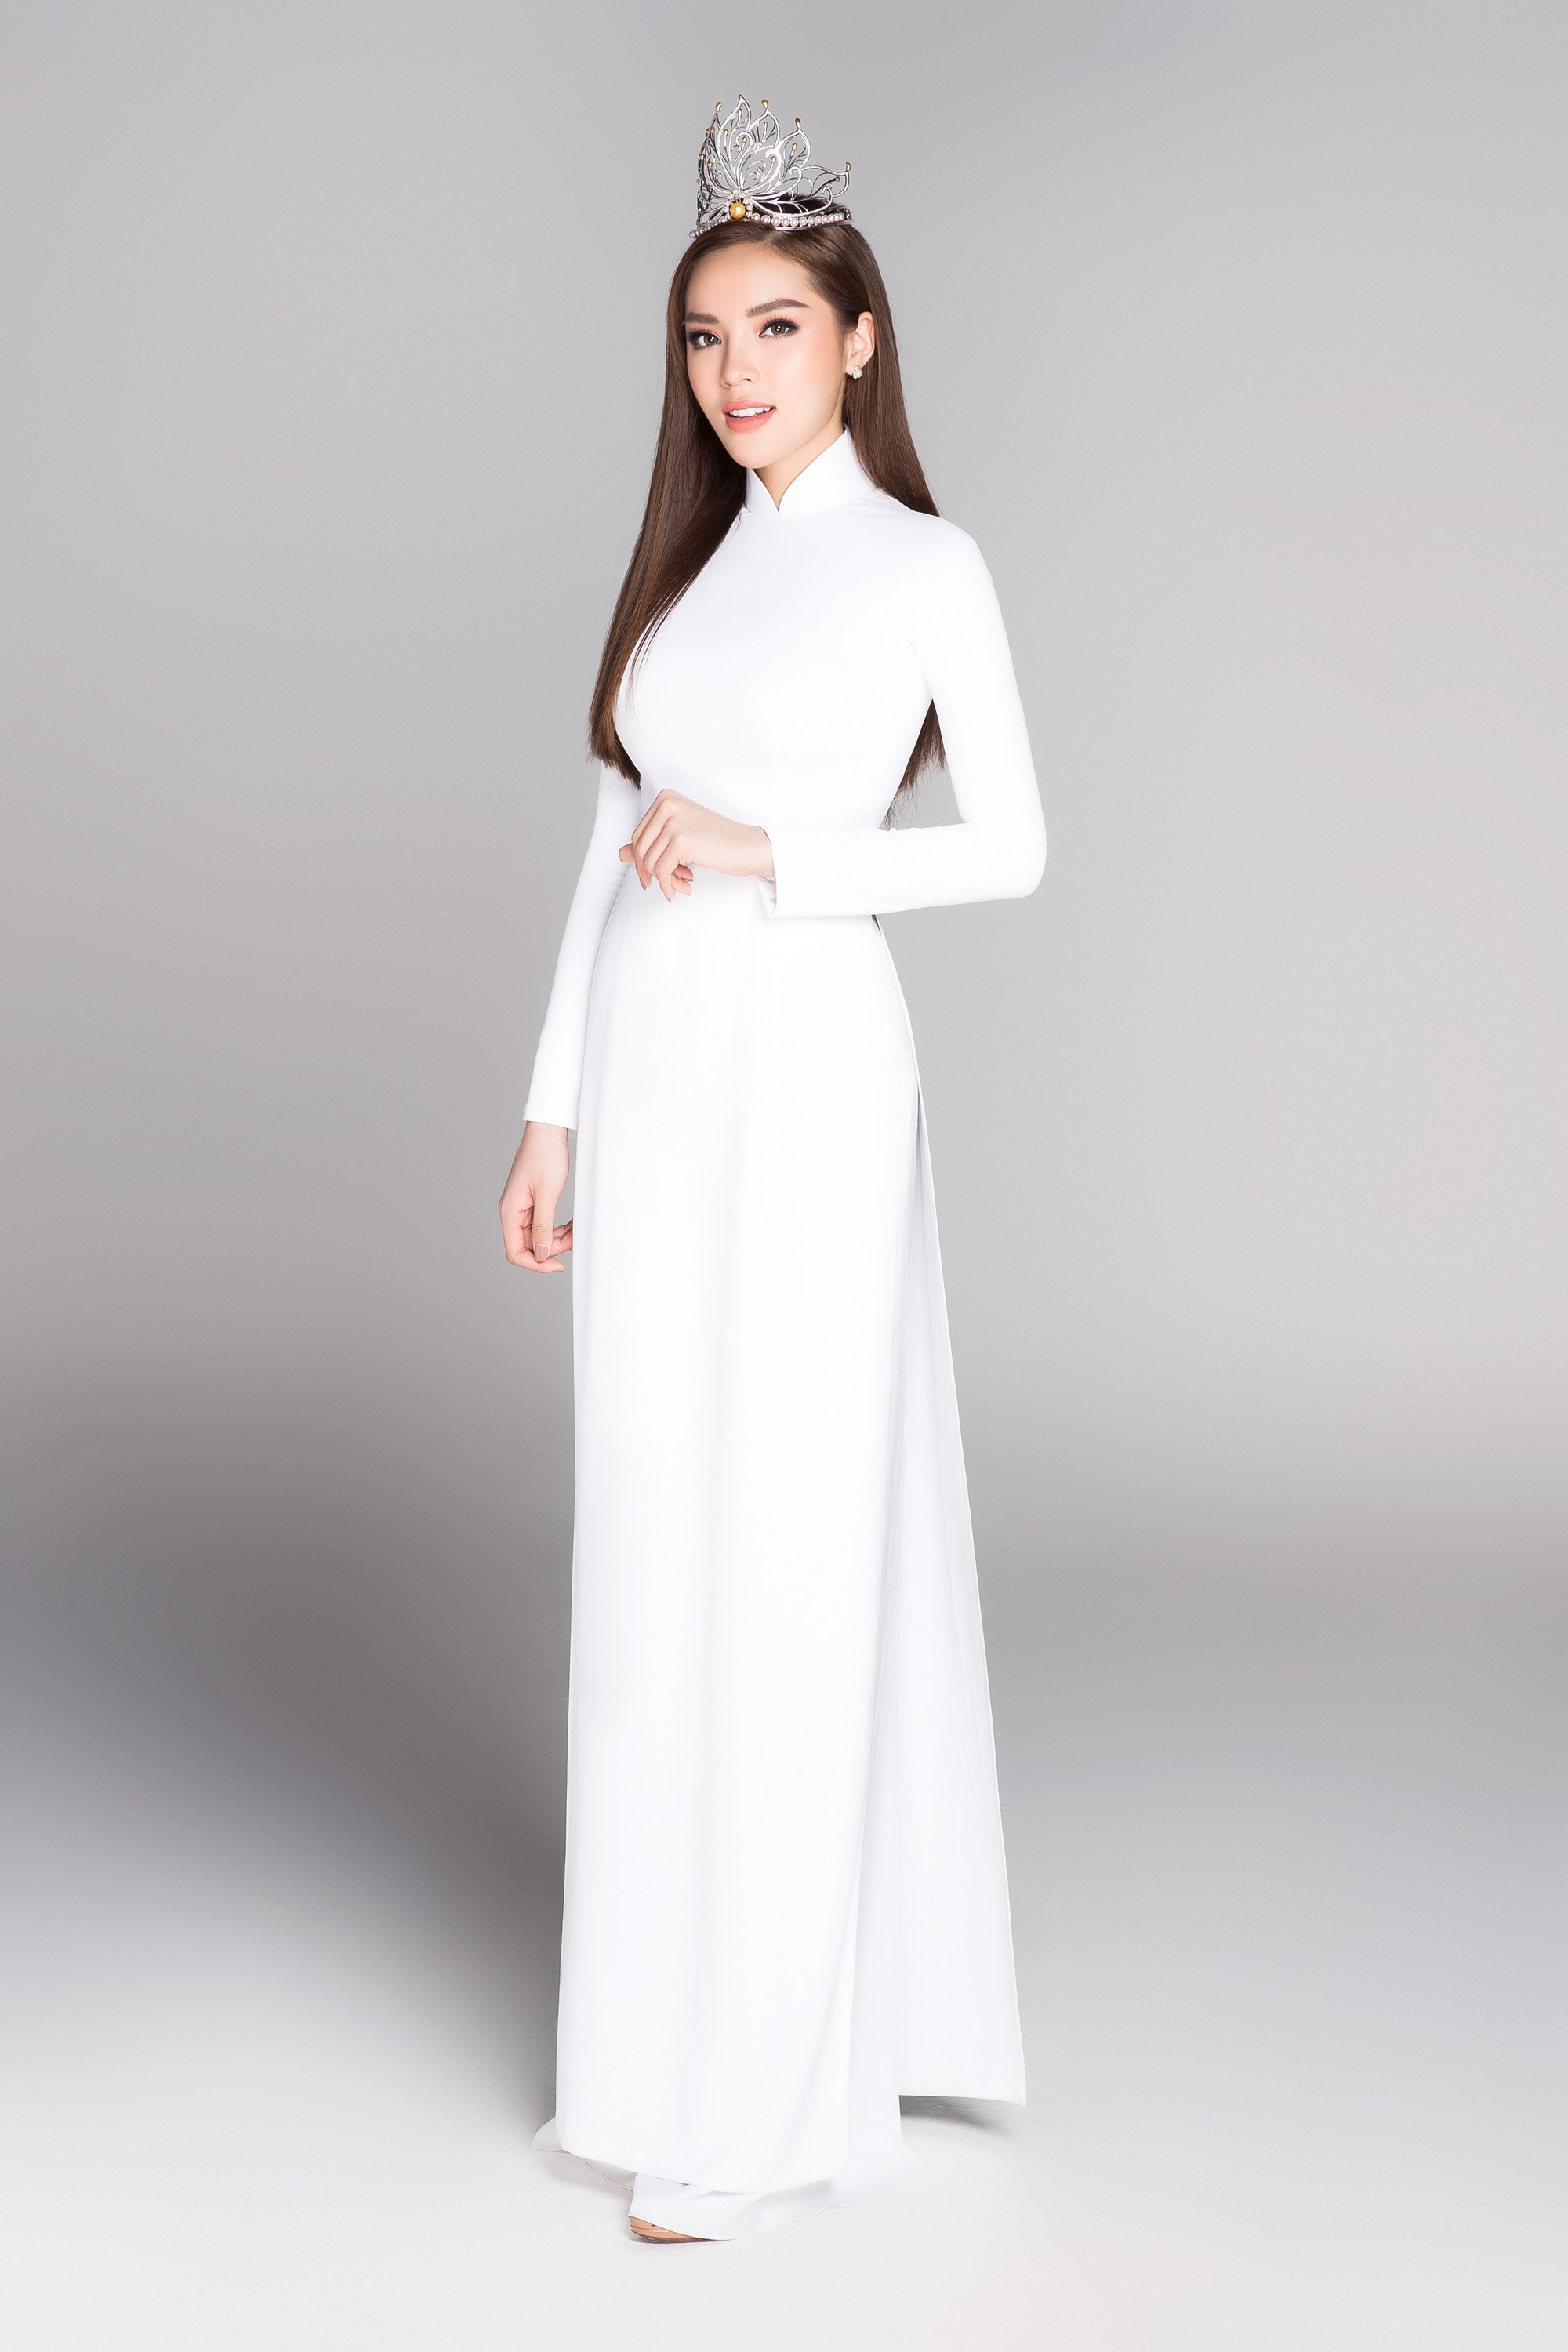 Không váy áo gợi cảm, Hoa hậu Kỳ Duyên, Đặng Thu Thảo lại gợi nhớ cả bầu trời thanh xuân khi diện áo dài trắng nữ sinh - Ảnh 1.